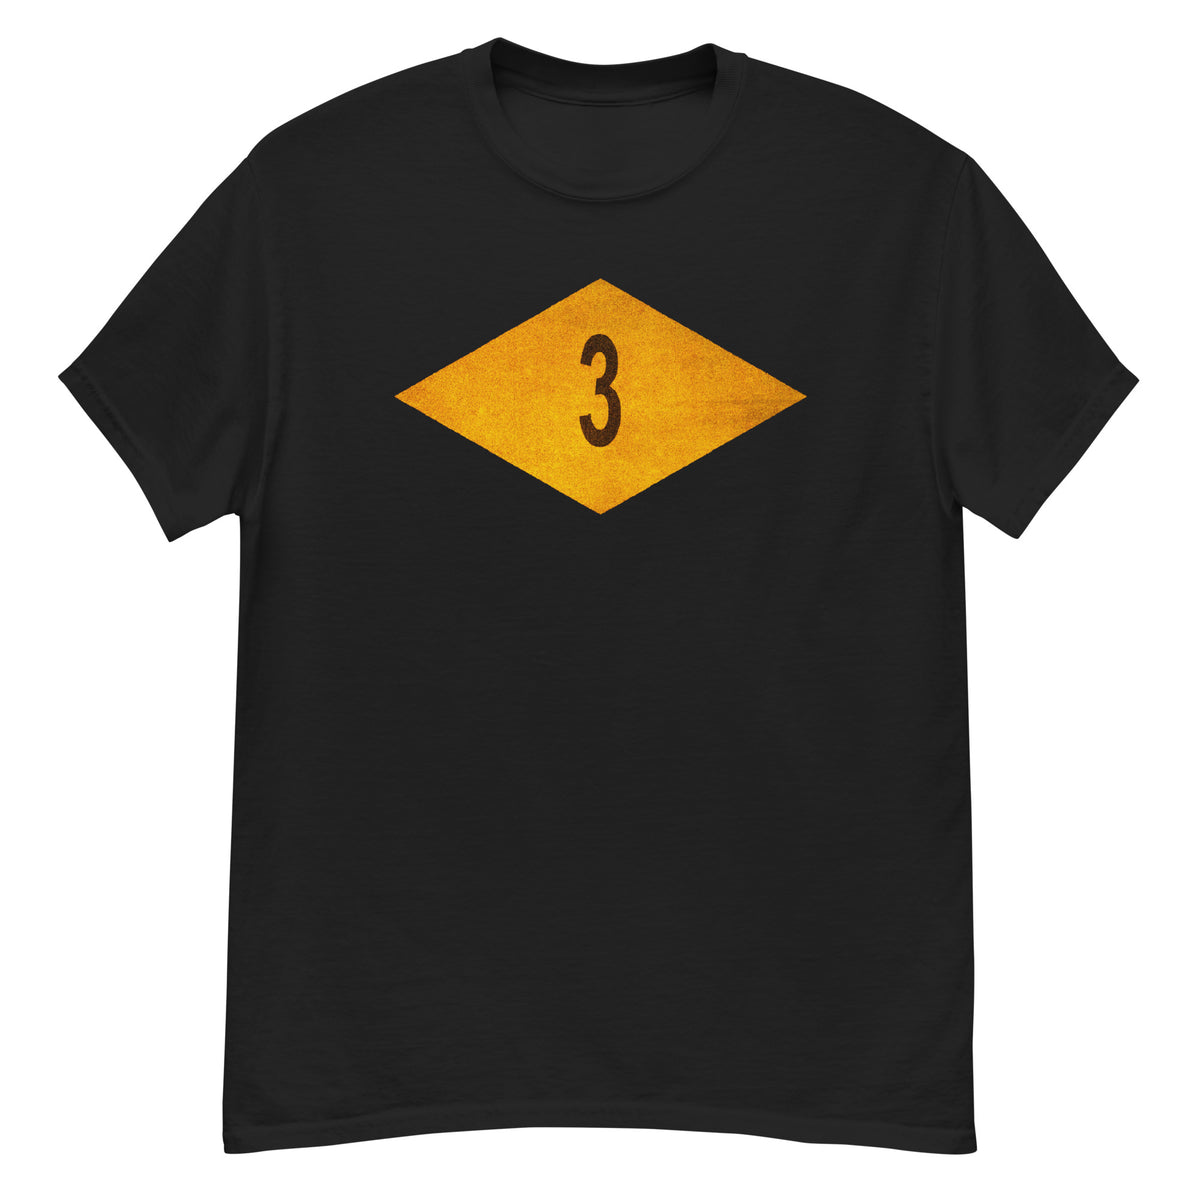 3rd Ranger Bat T-shirt